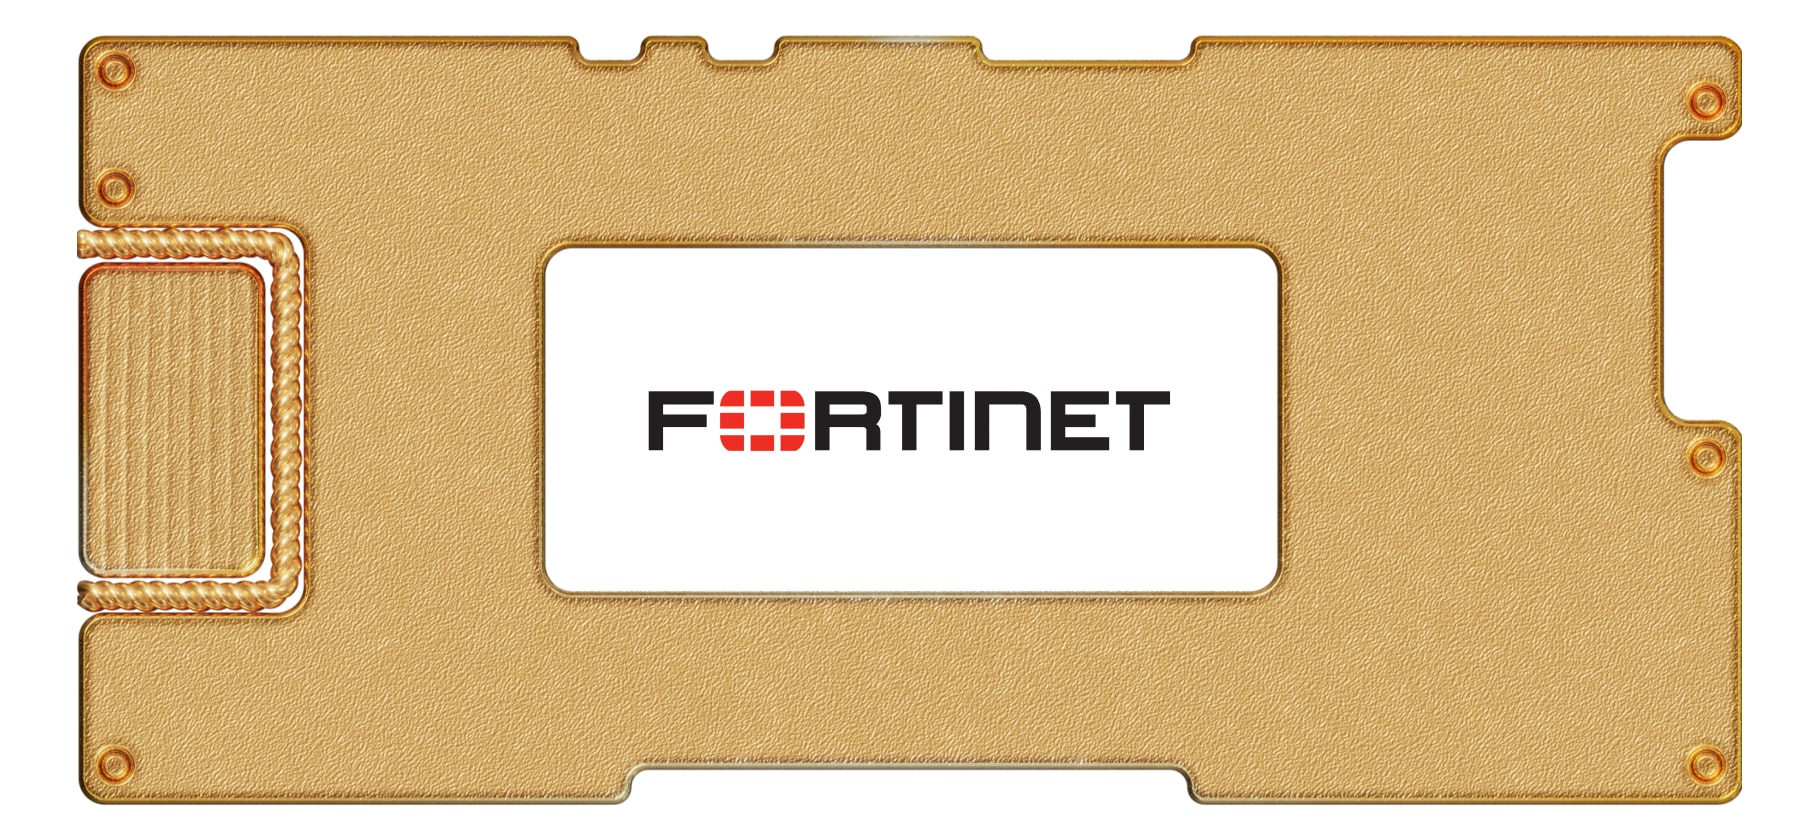 Инвестидея: Fortinet, потому что хакеров стало больше